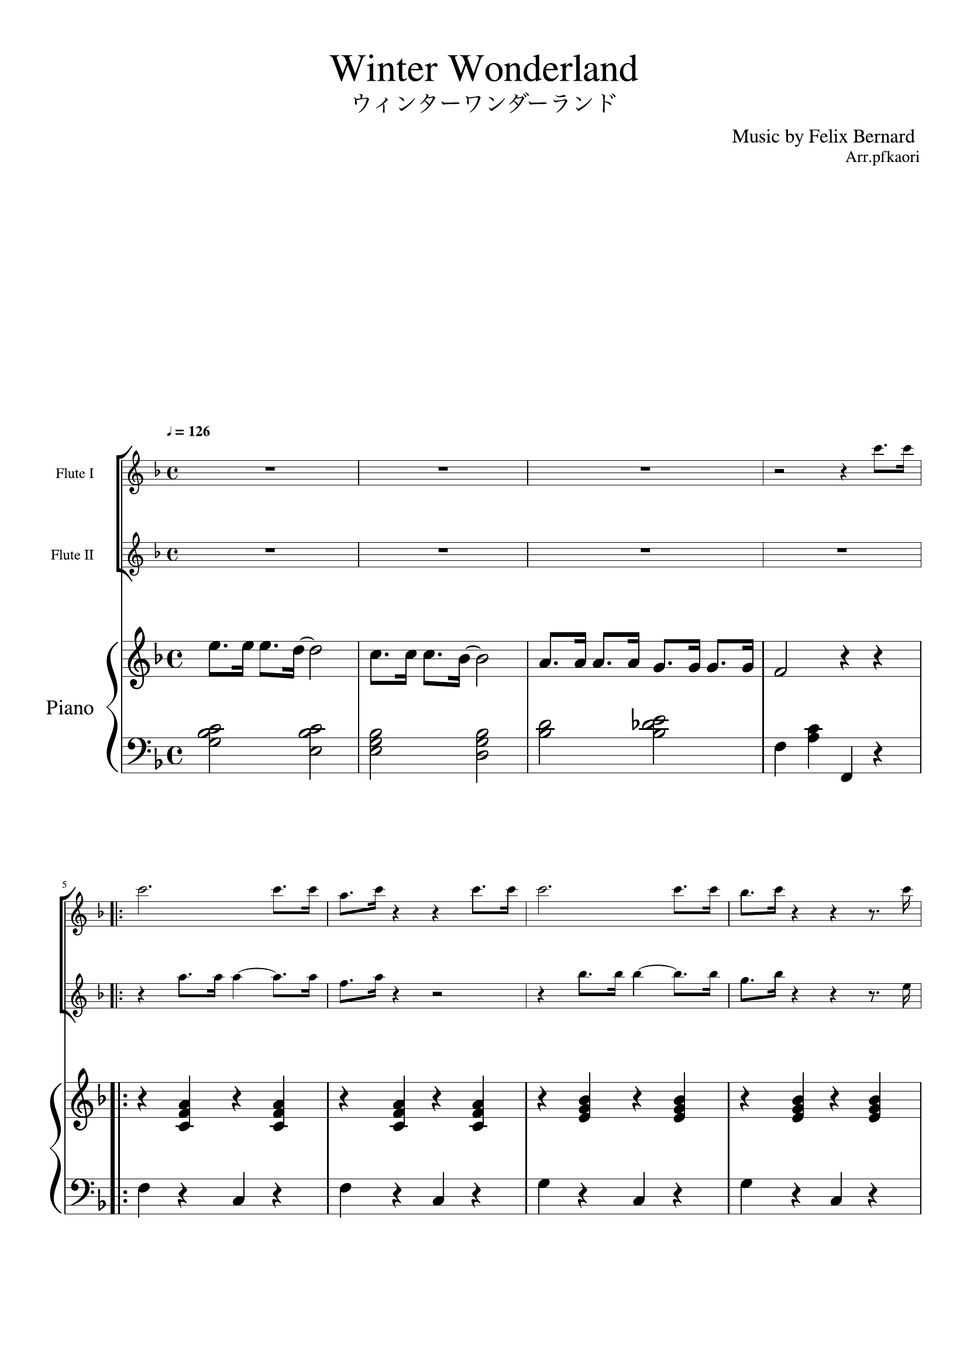 フェリックスバーナード - ウィンターワンダーランド (ピアノトリオ(フルート二重奏)) by pfkaori